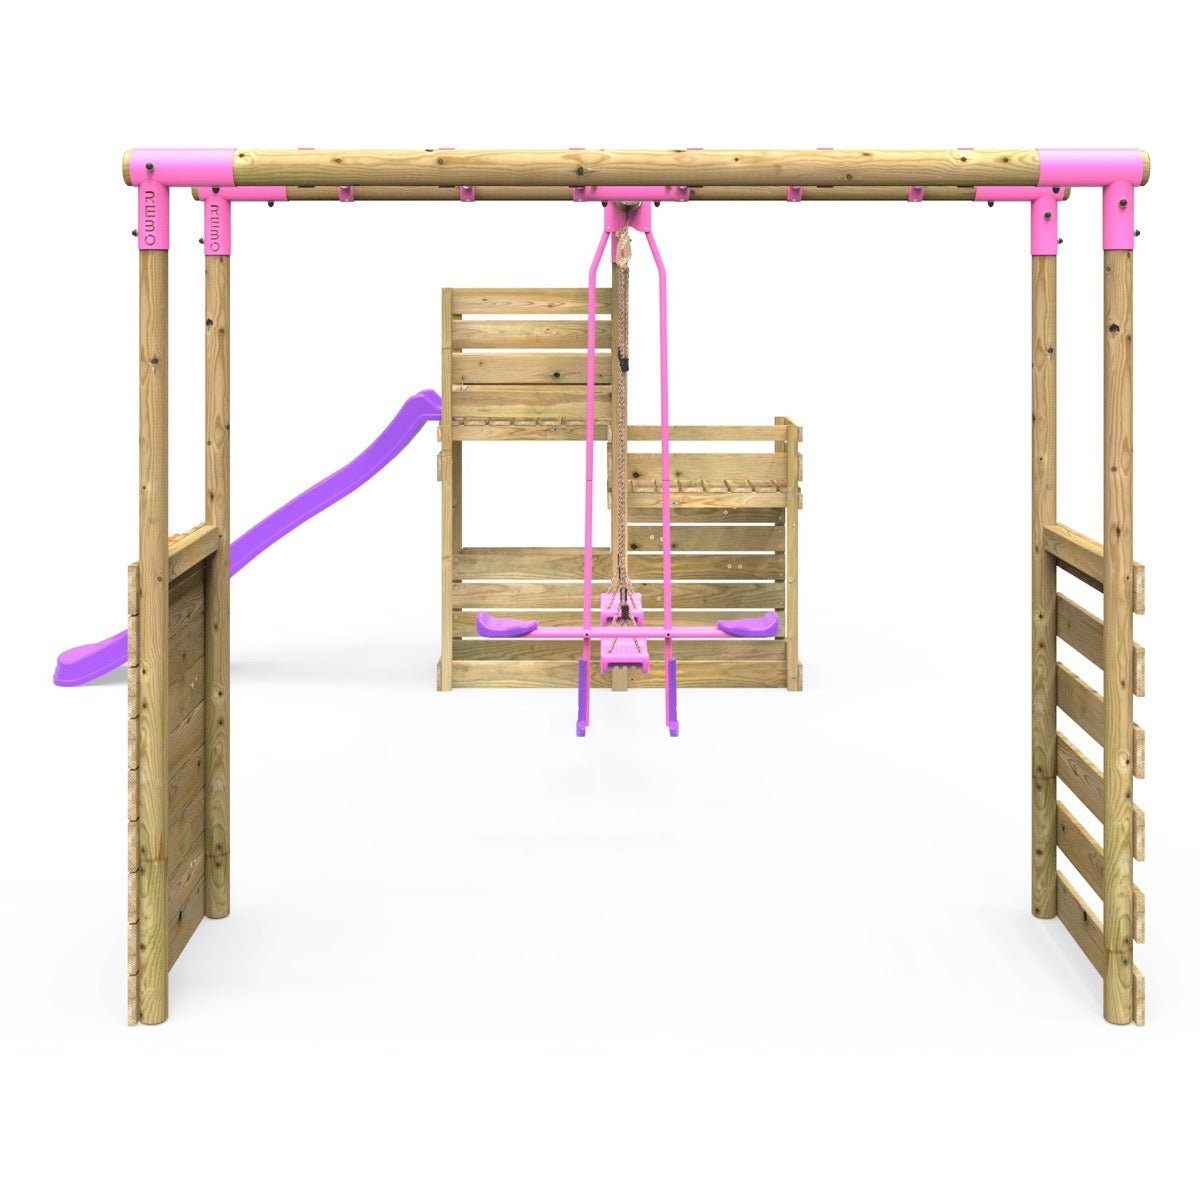 Rebo Wooden Swing Set plus Deluxe Deck, 8FT Slide & Monkey Bars - Neptune Pink